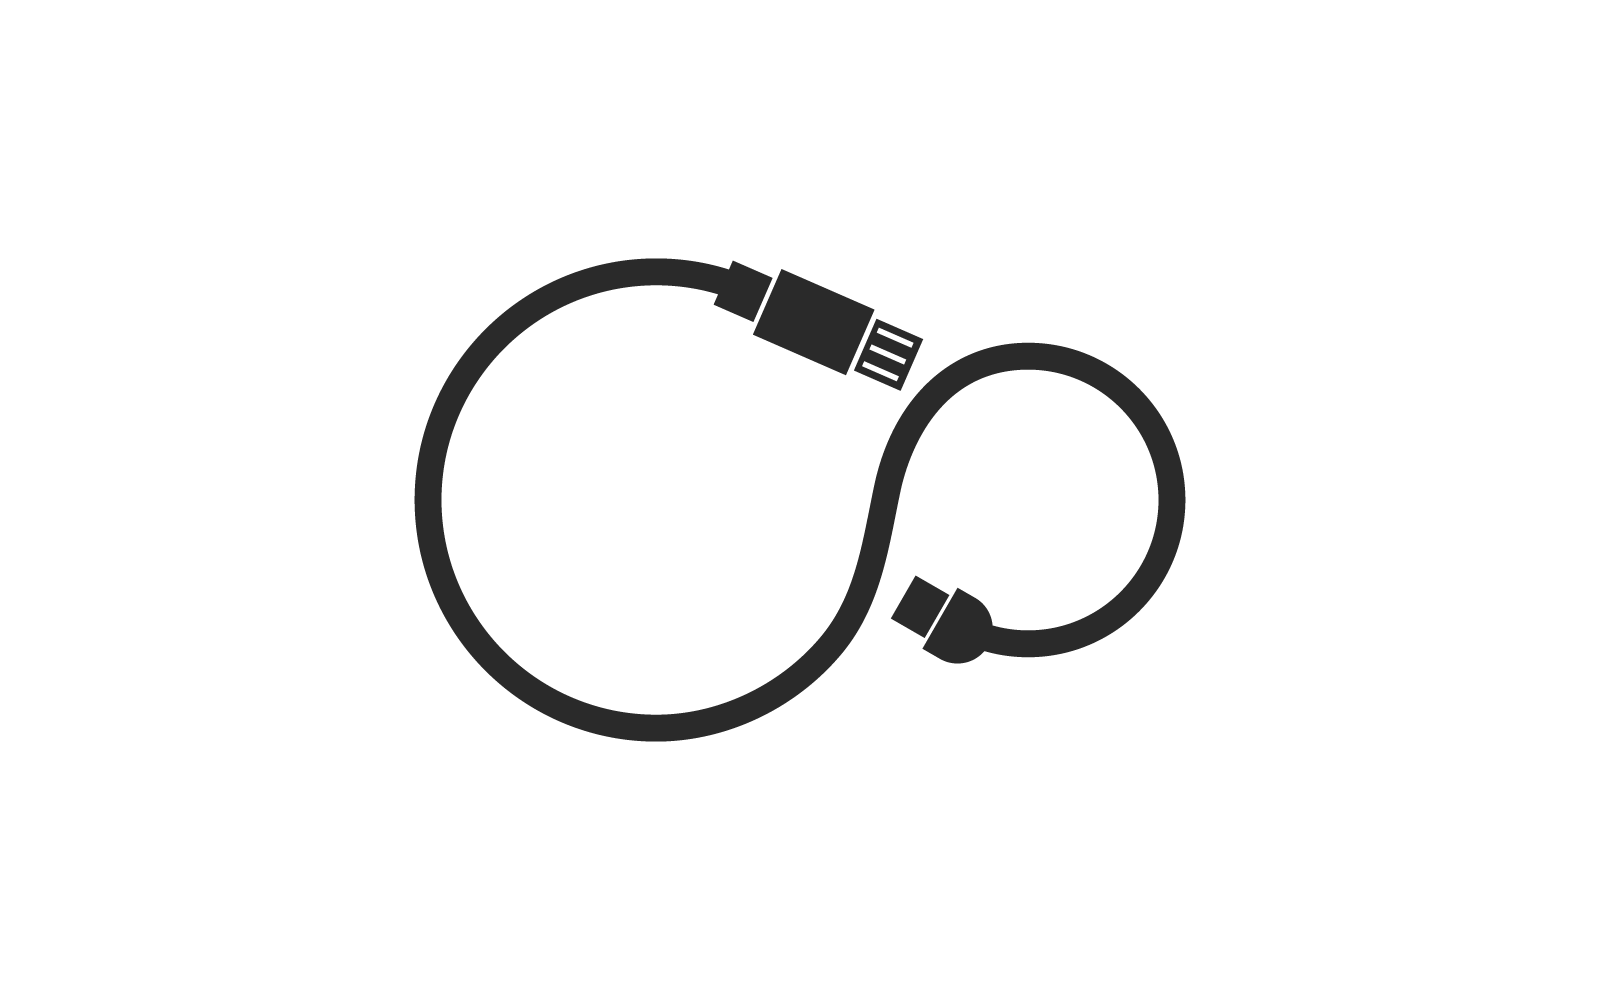 Transferência de dados USB, ilustração vetorial do logotipo do ícone do cabo